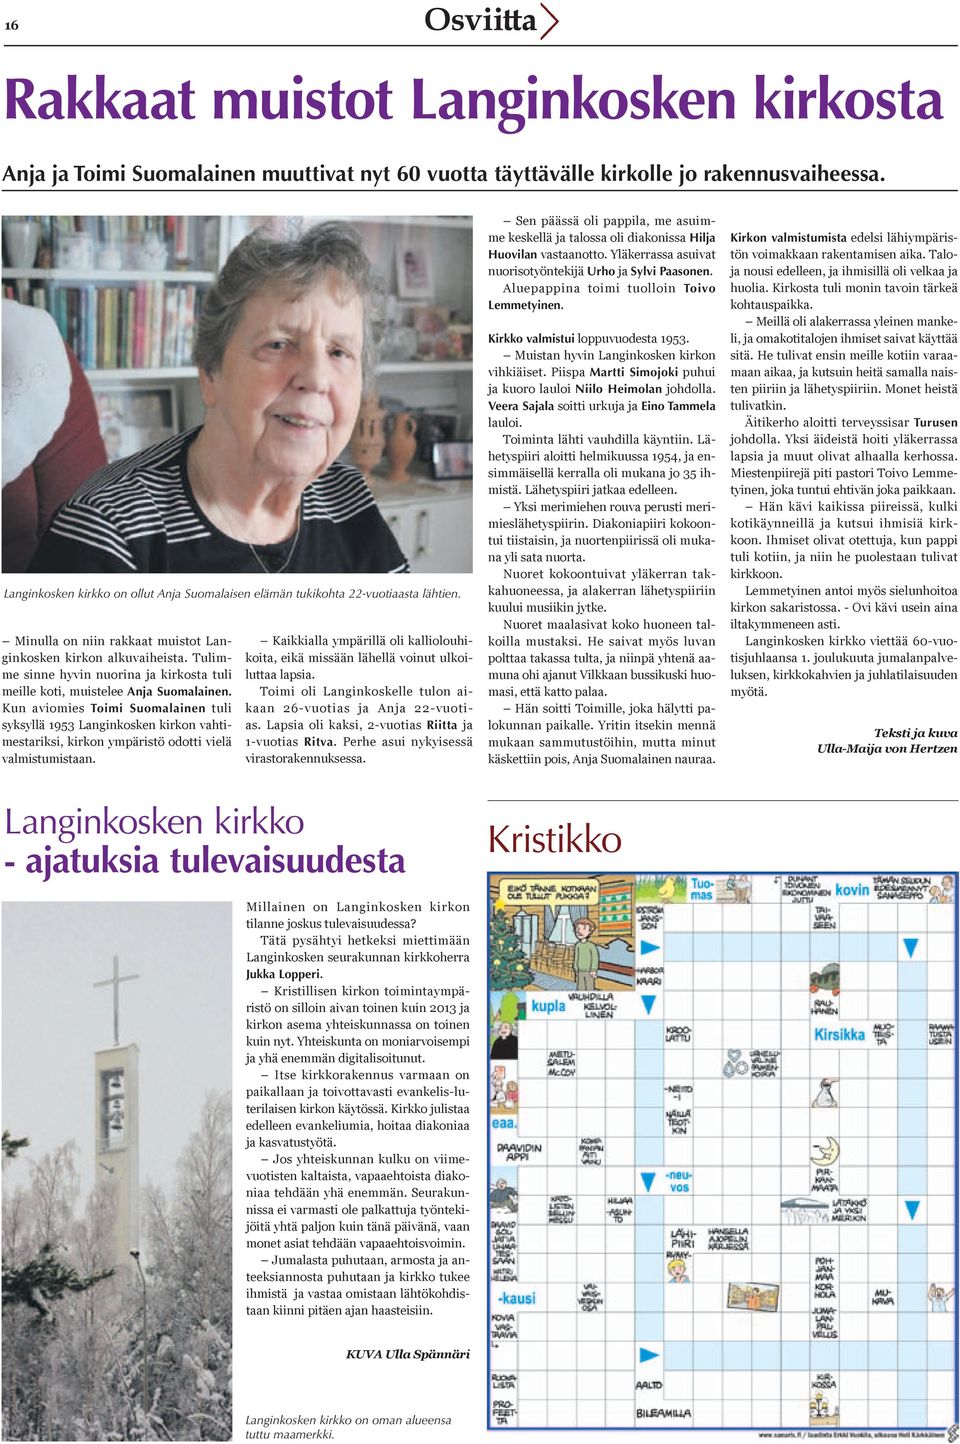 Tulimme sinne hyvin nuorina ja kirkosta tuli meille koti, muistelee Anja Suomalainen.